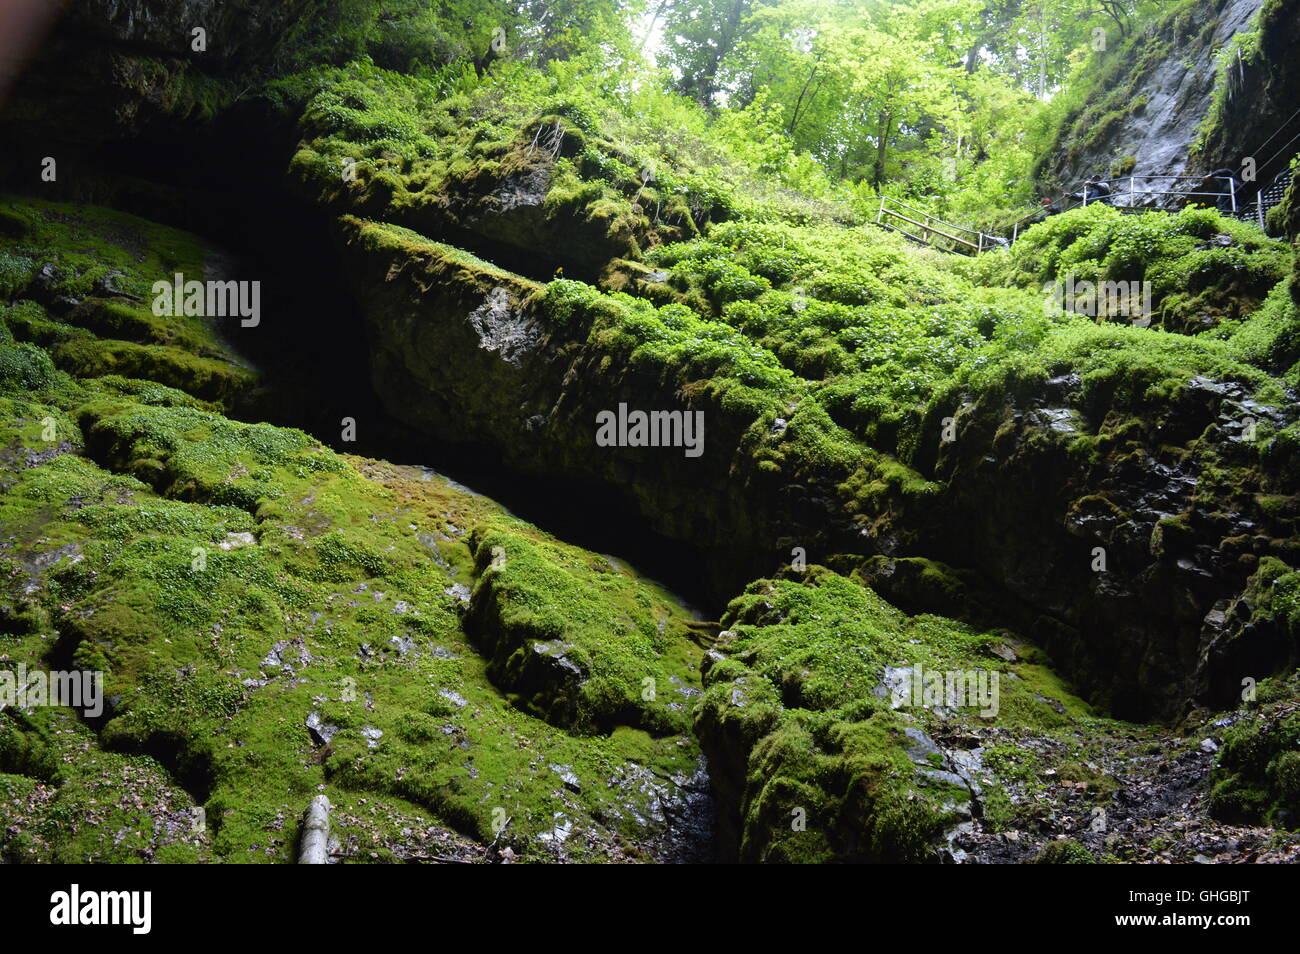 Moss rocce coperte all'ingresso della grotta Scarisoara Foto Stock